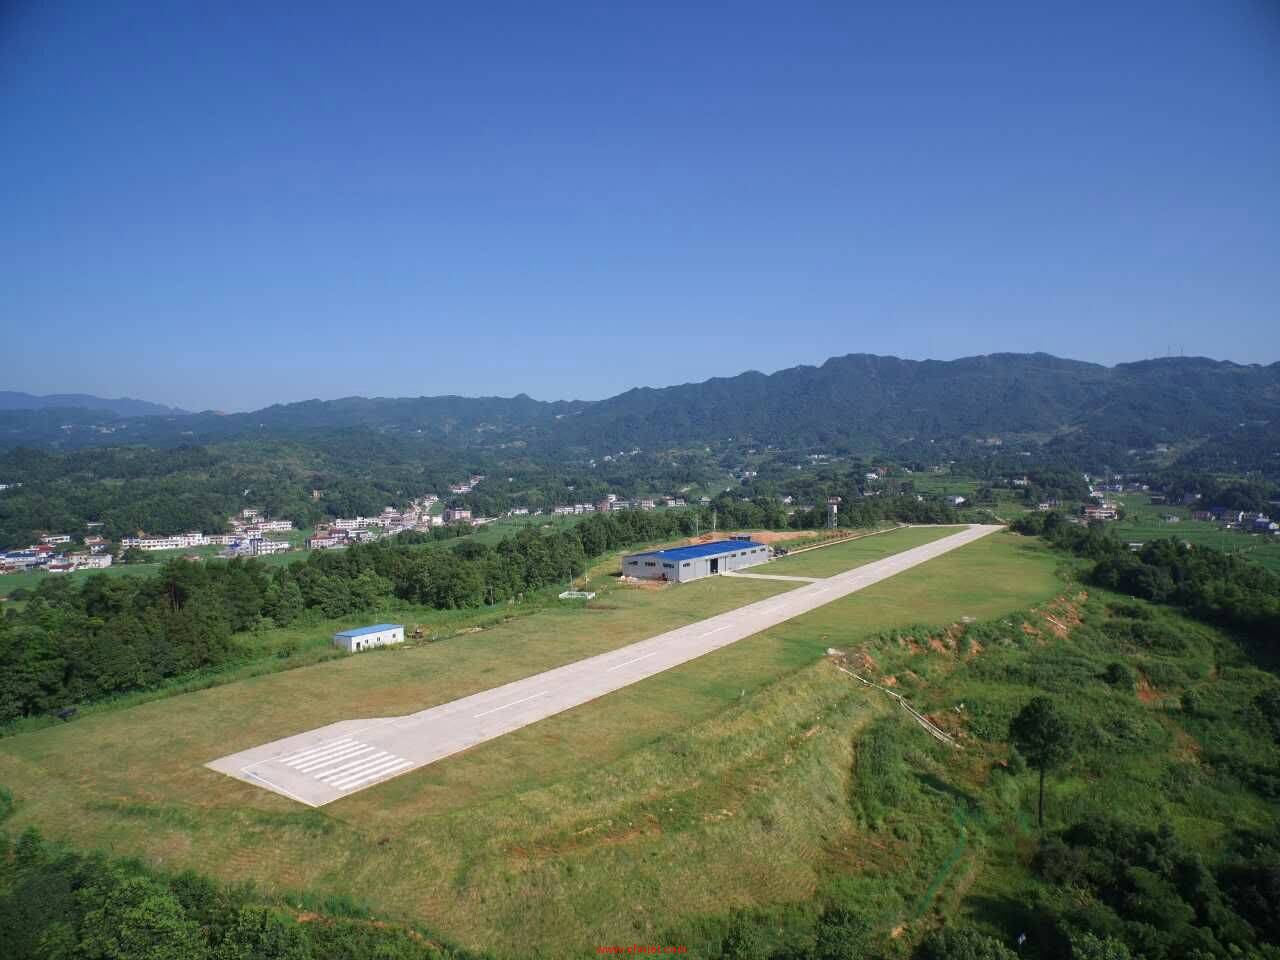 2016飞行者大会湖南沩山站